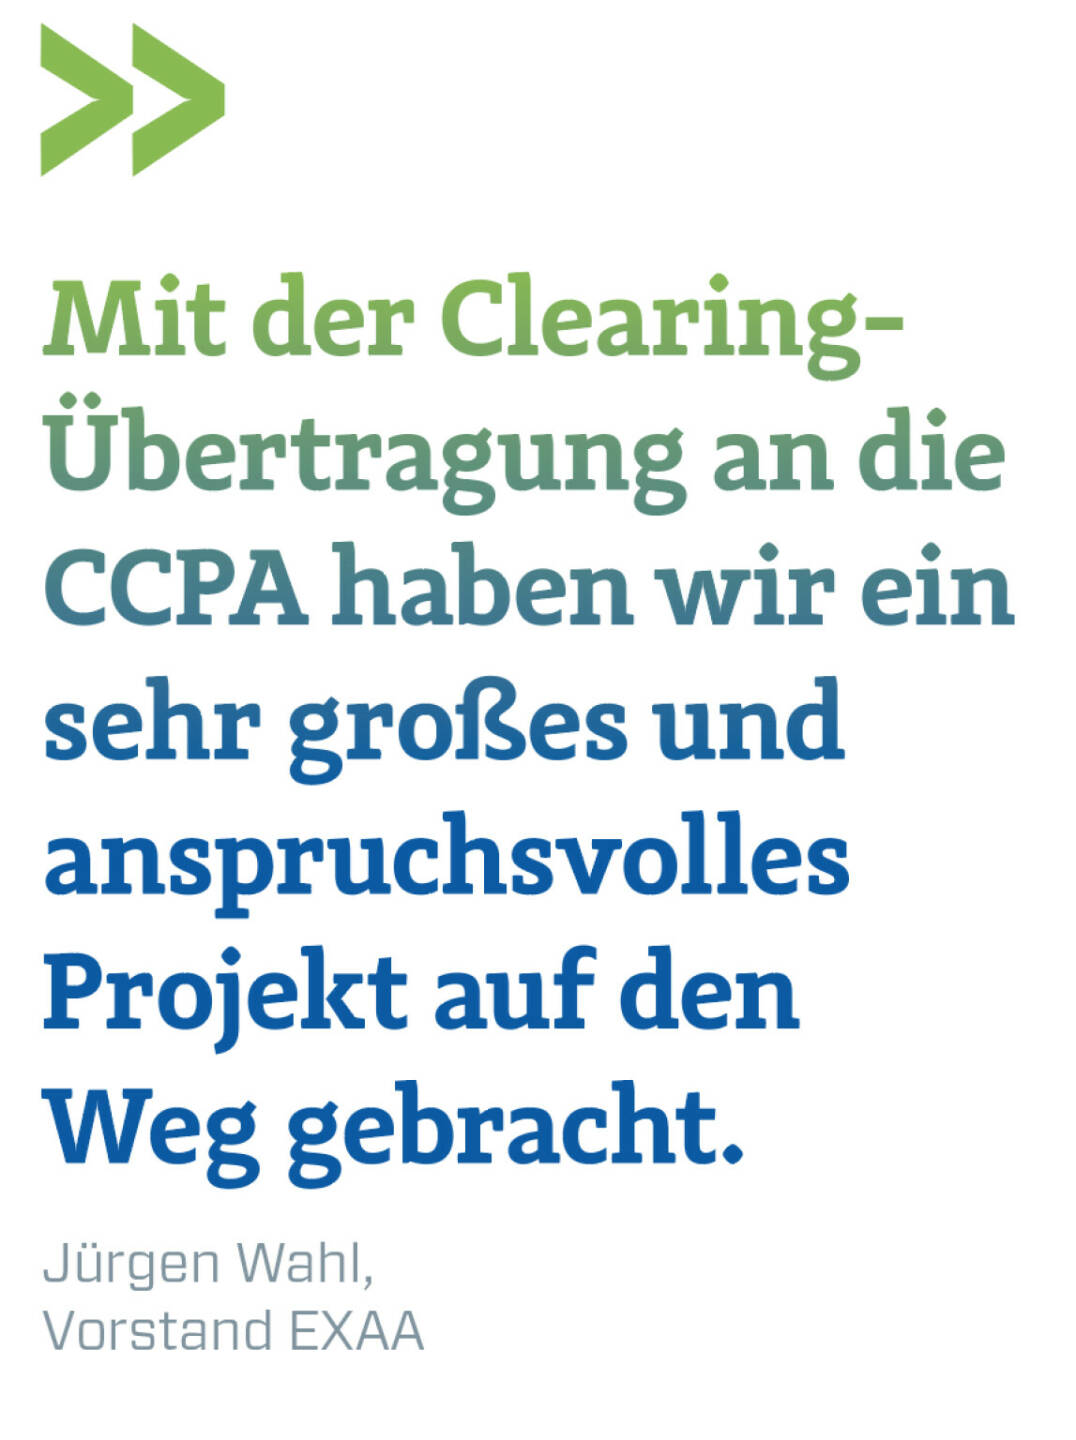 Mit der Clearing-Übertragung an die CCPA haben wir ein sehr großes und anspruchsvolles Projekt auf den Weg gebracht.
Jürgen Wahl, Vorstand EXAA 